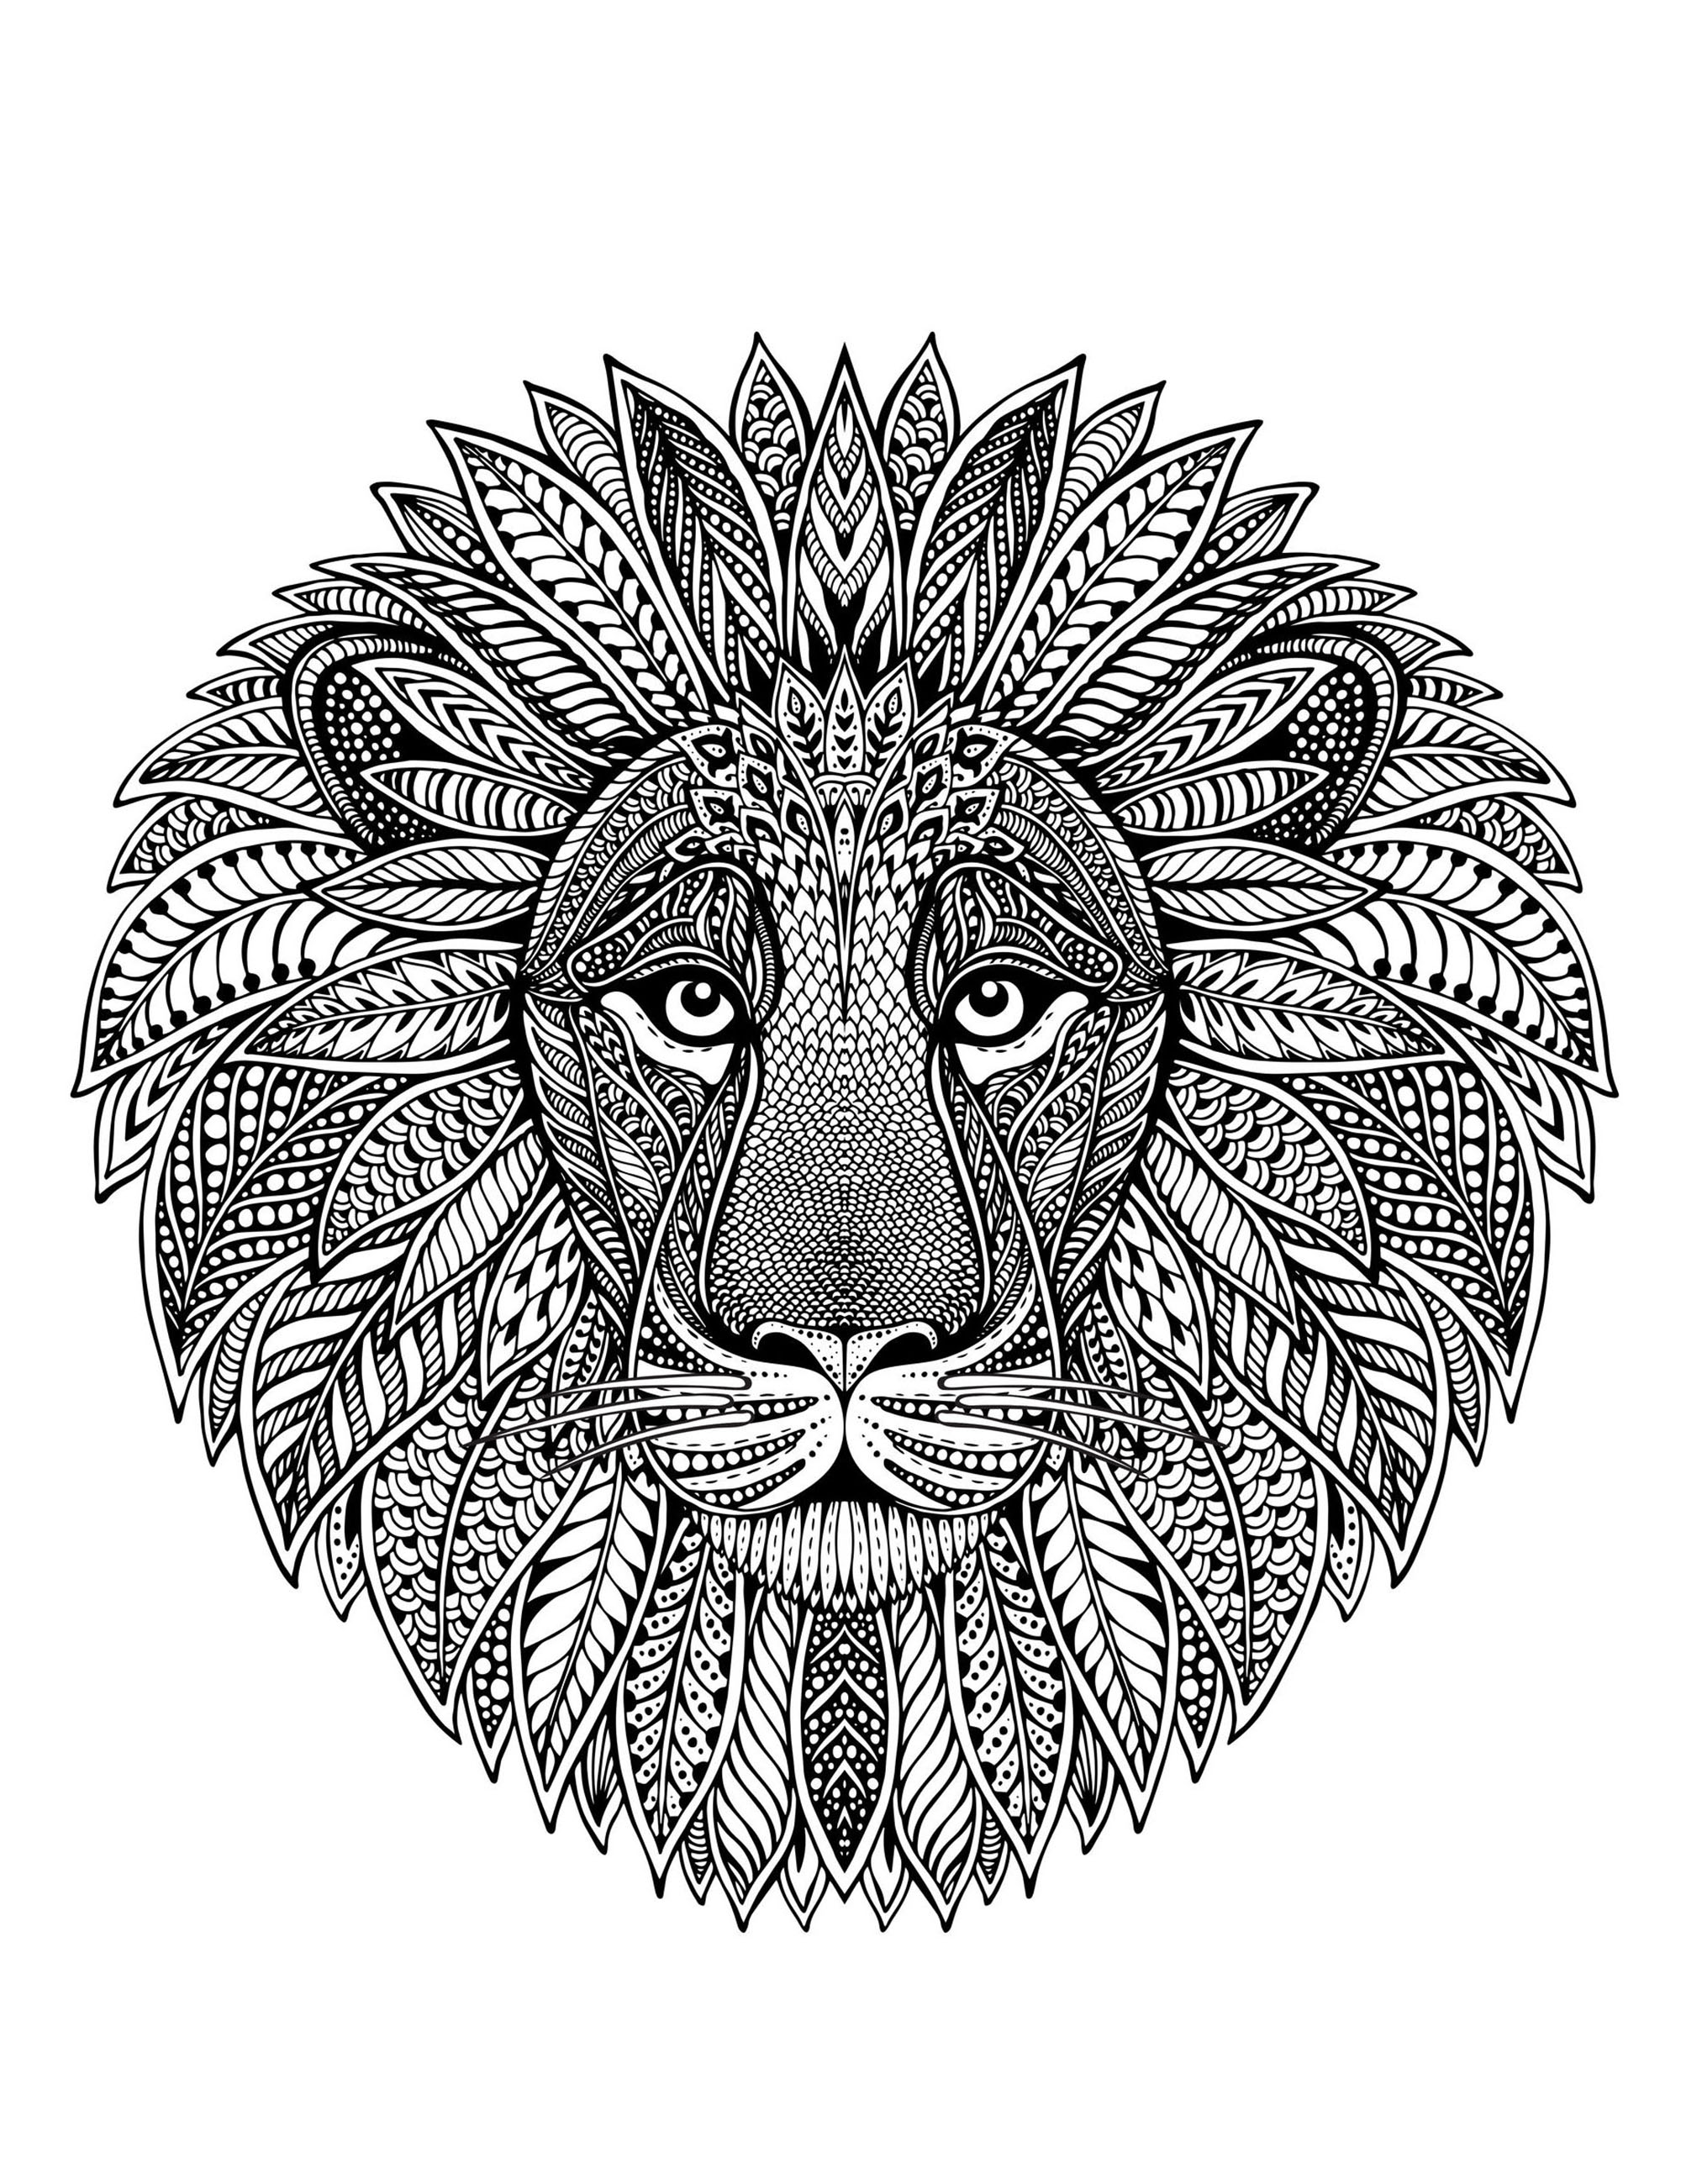 Ein Mandala, das einen Löwenkopf in Szene setzt, für diejenigen, die es vorziehen, konkrete und lebendige Elemente in Farbe umzusetzen.